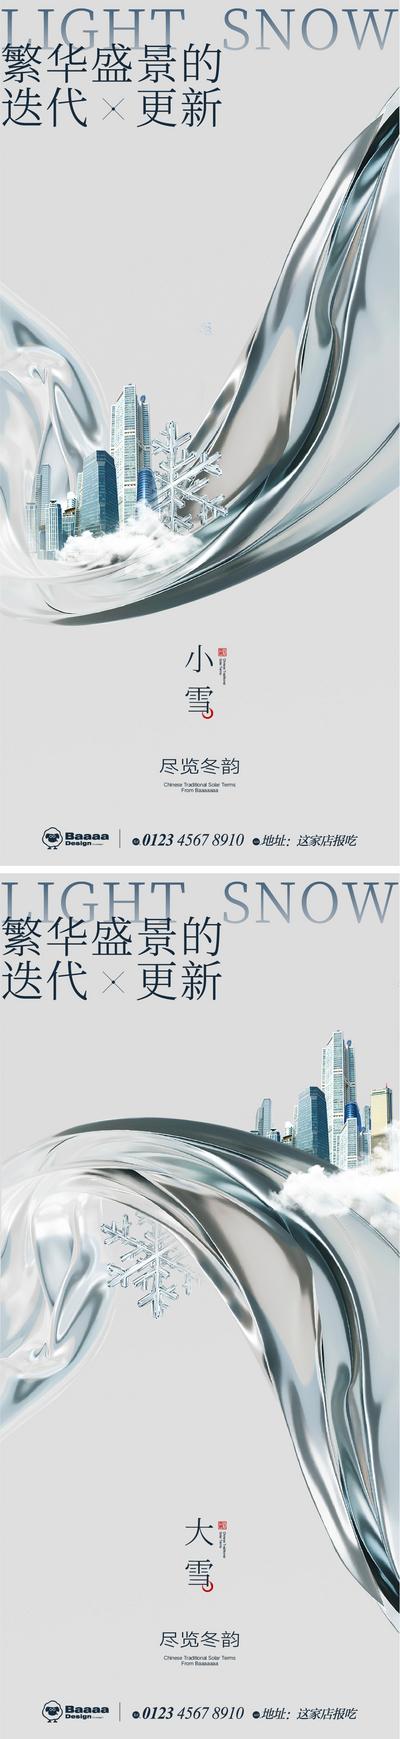 【南门网】广告 海报 节气 系列 商业 小雪 大雪 肌理 大气 建筑 圈层 商圈 刷屏